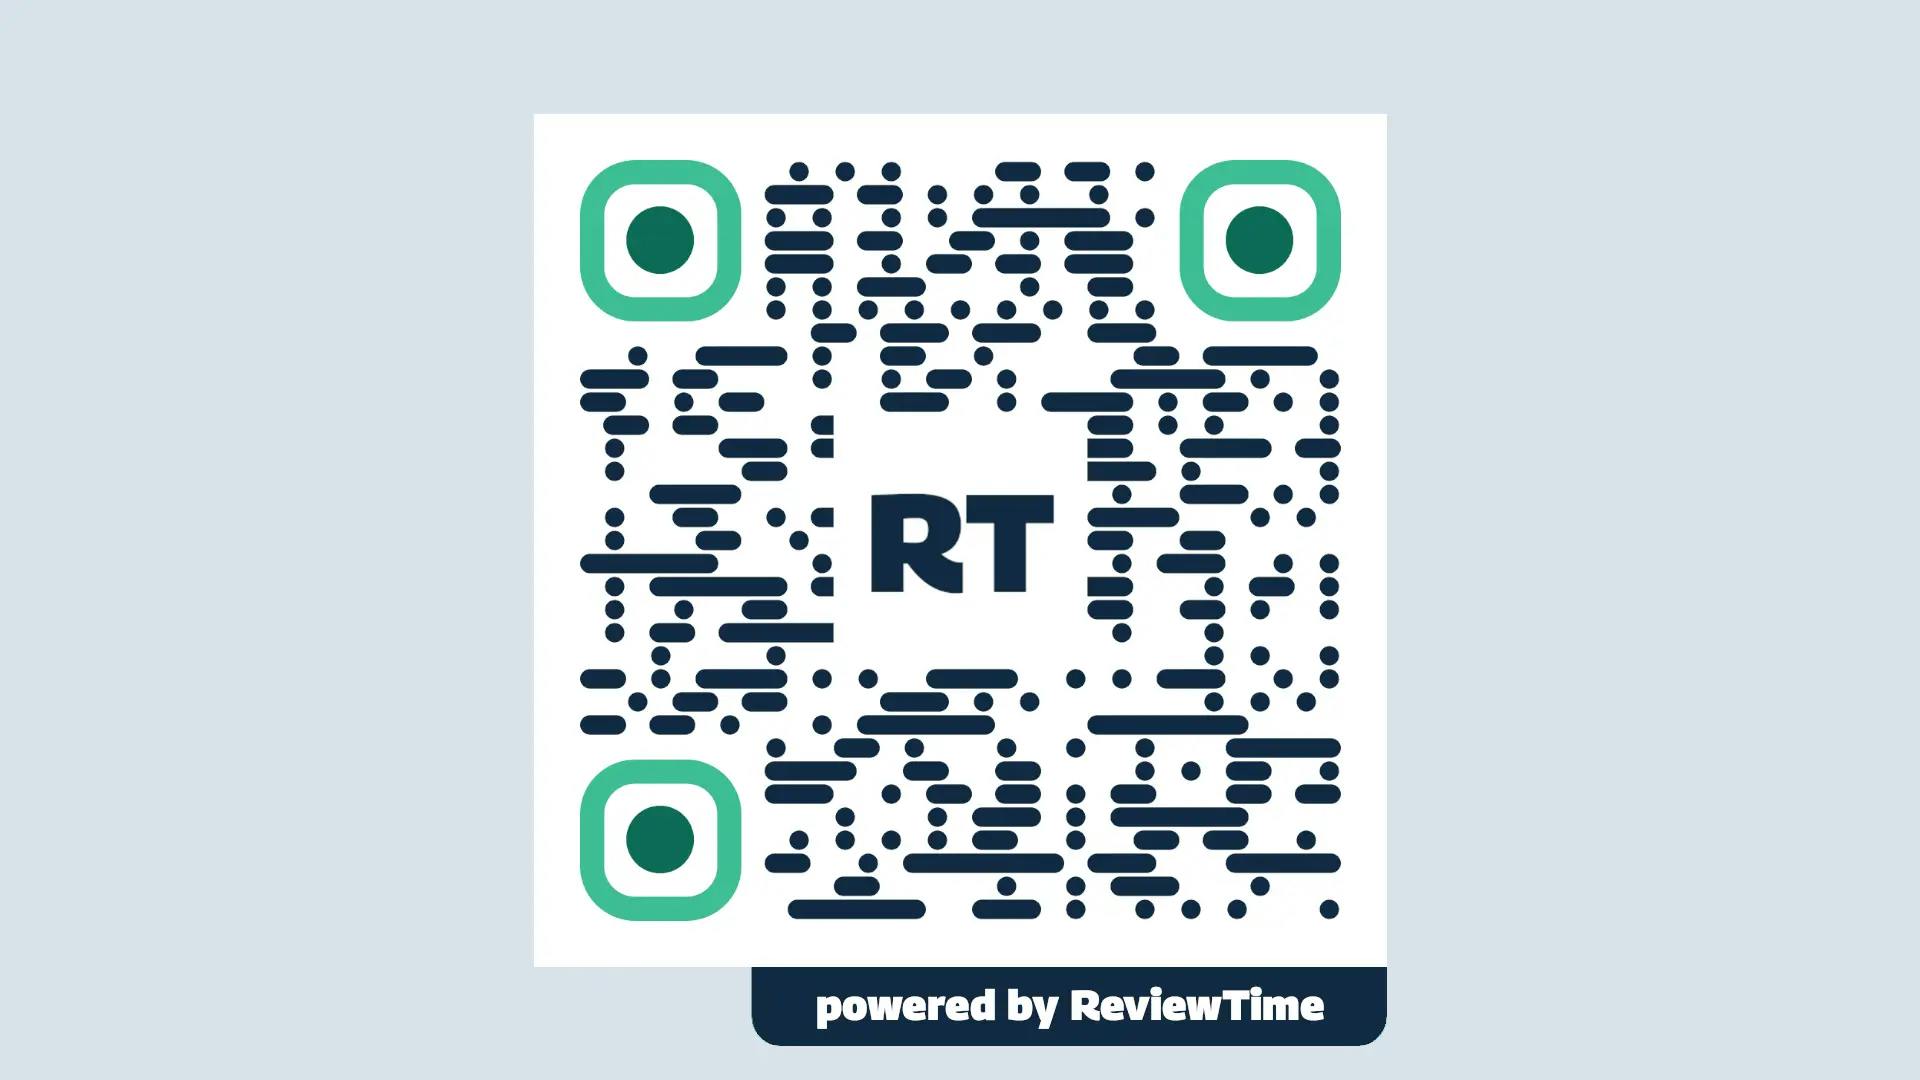 ReviewTime's QR Codes showcase